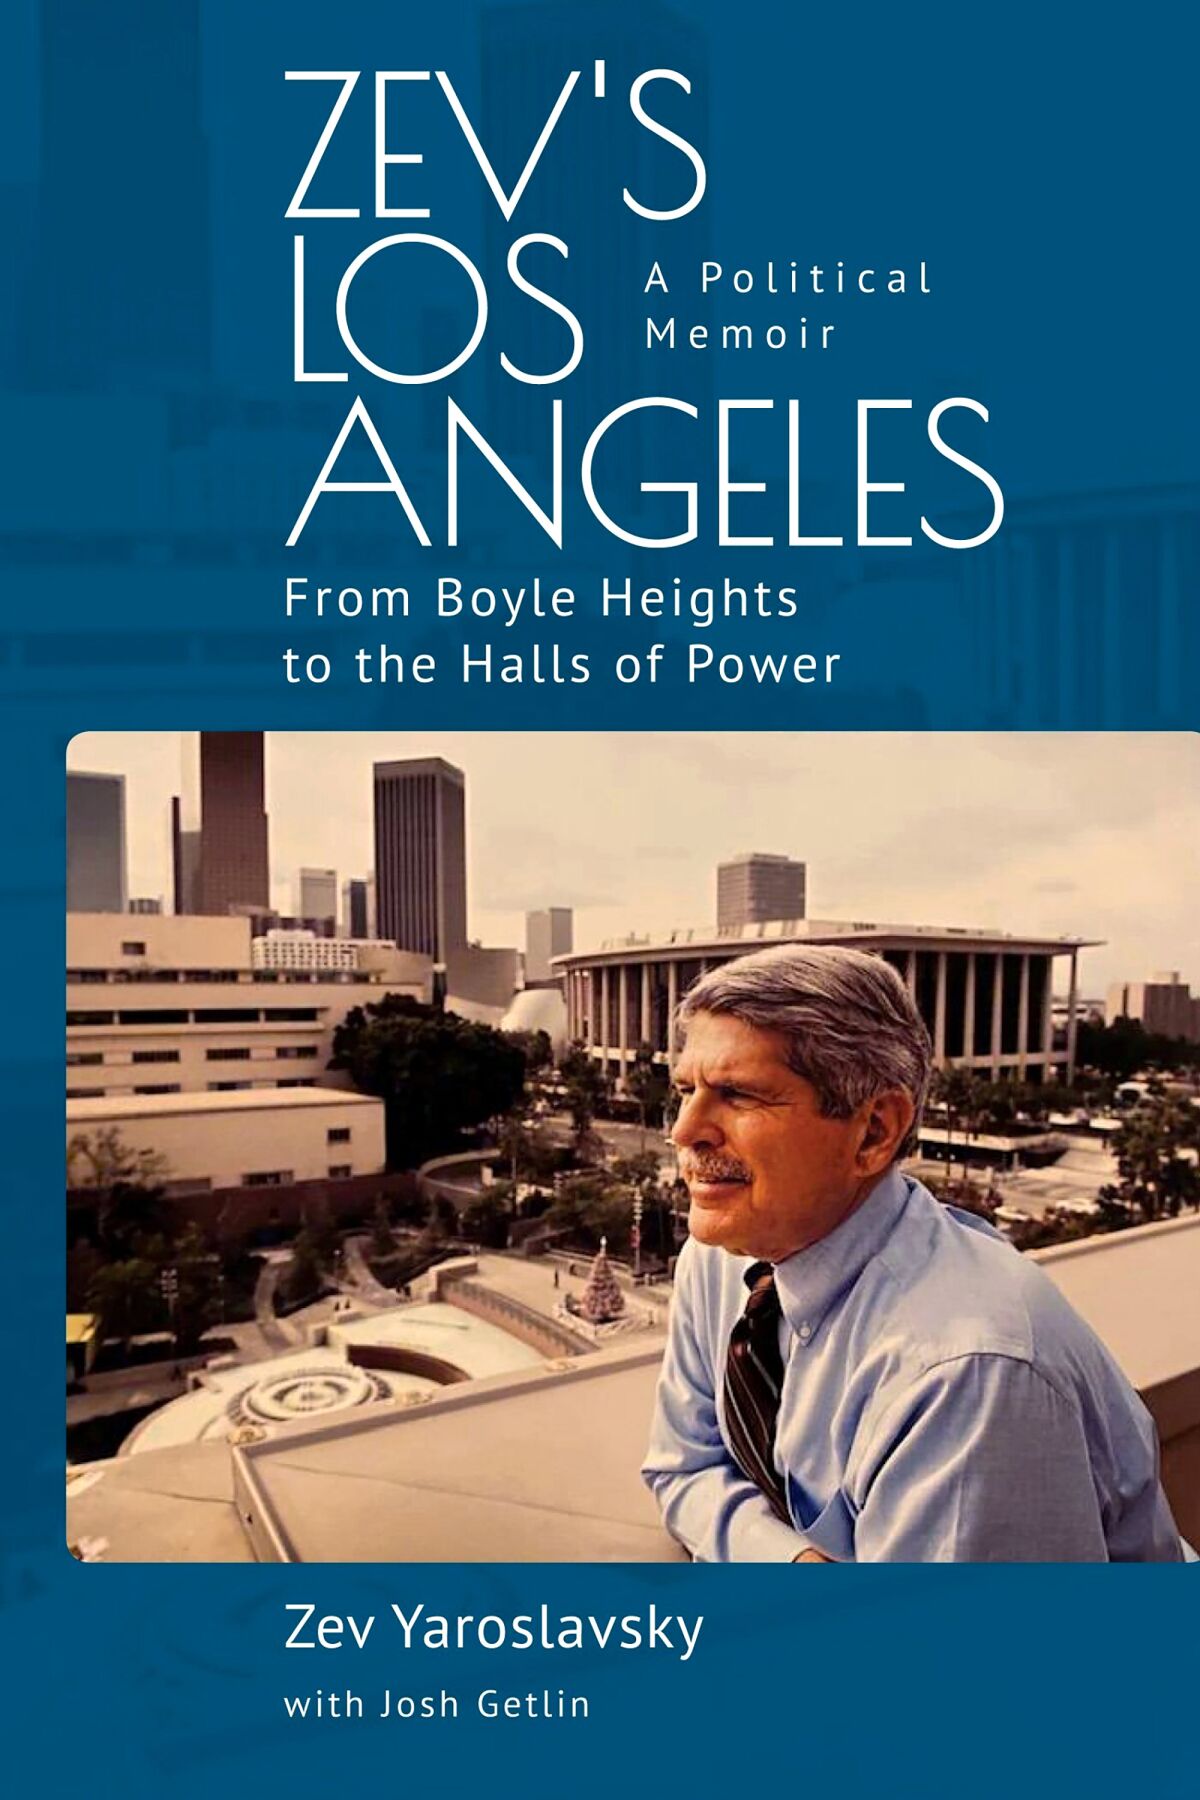 Buchcover für "Zevs Los Angeles: Von Boyle Heights zu den Hallen der Macht.  Eine politische Erinnerung" von Zev Yaroslavsky